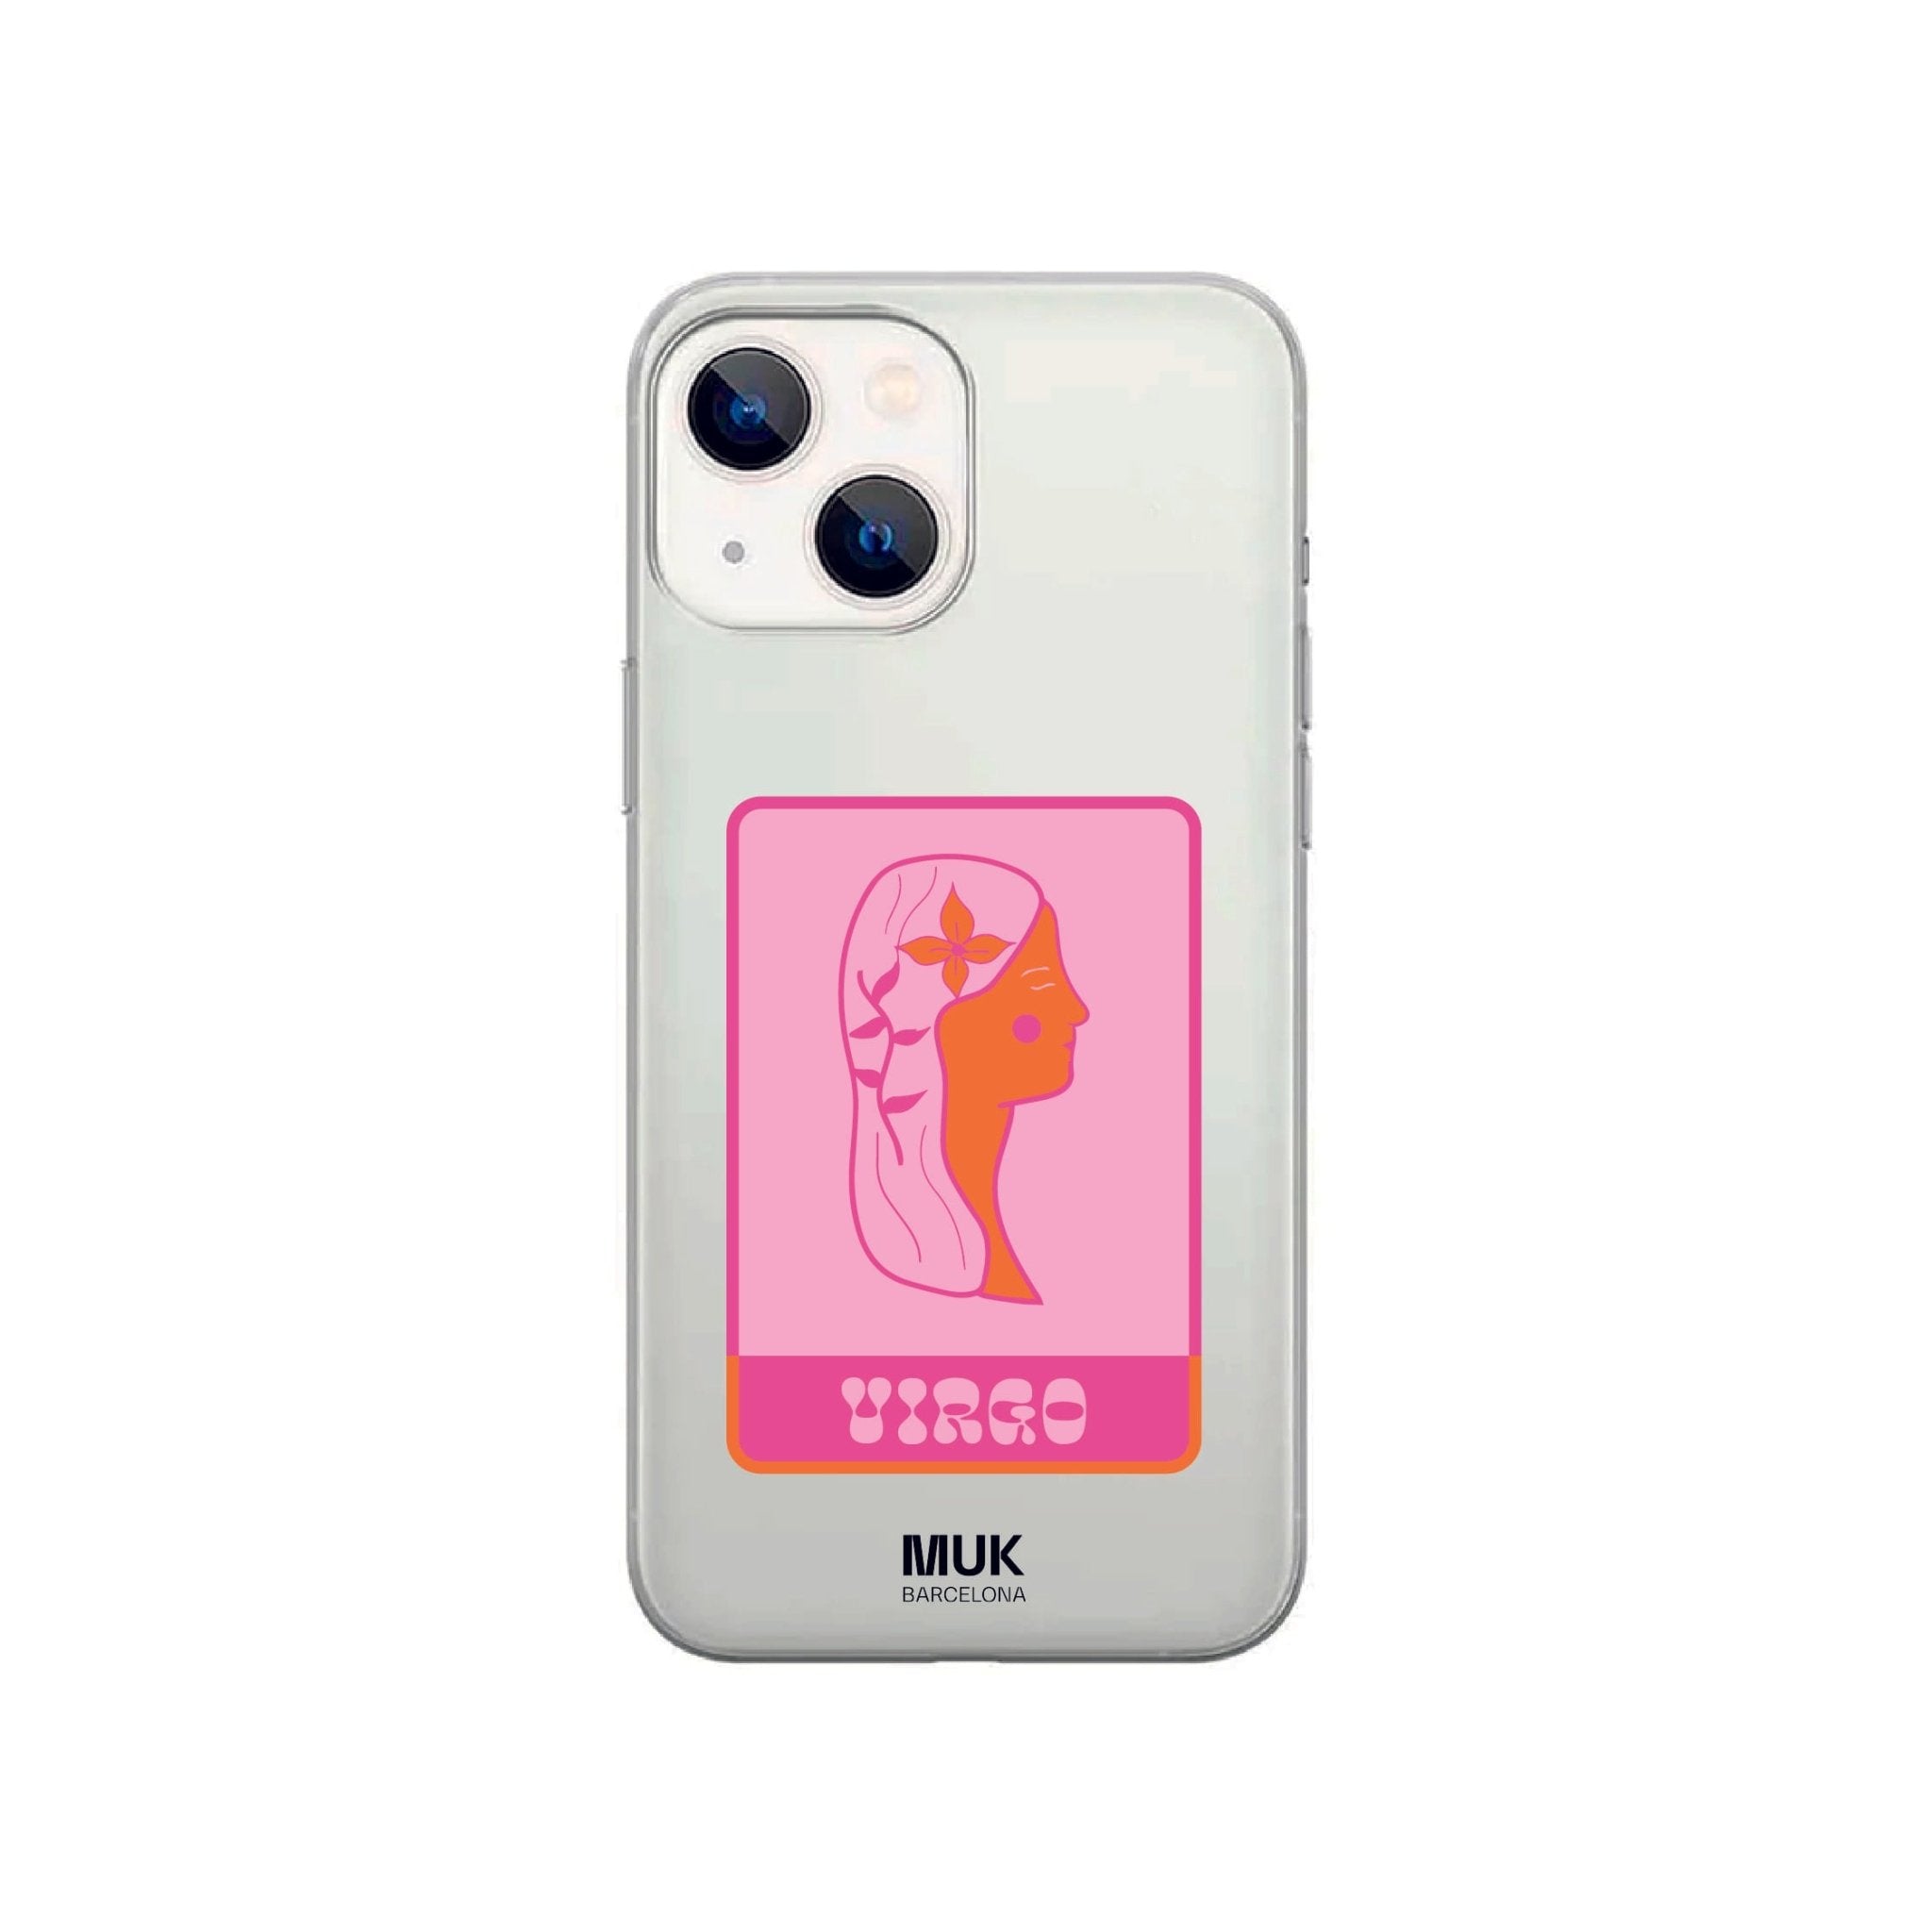 Funda de móvil transparente con el signo del zodíaco Virgo de color fucsia, rosa palo y naranja.
